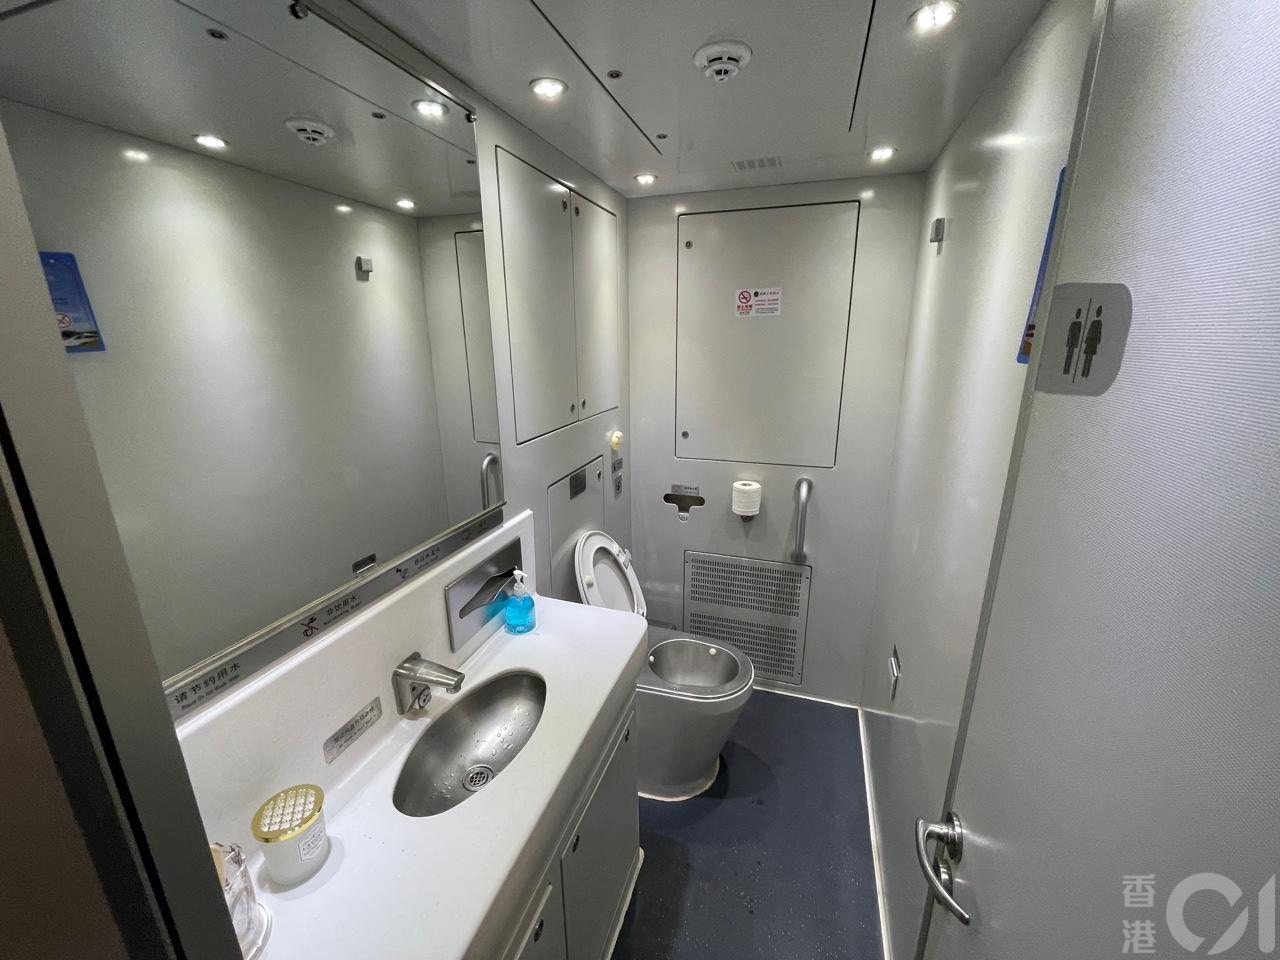 来往香港至上海的高铁通宵卧铺列车6月15日晚启航。列车特点是特设高级卧铺床位，票价每位高达2,128元。专用洗手间设于车厢一头一尾，坐厕设计，洗手间空间亦较普通卧铺大。(潘耀升摄)